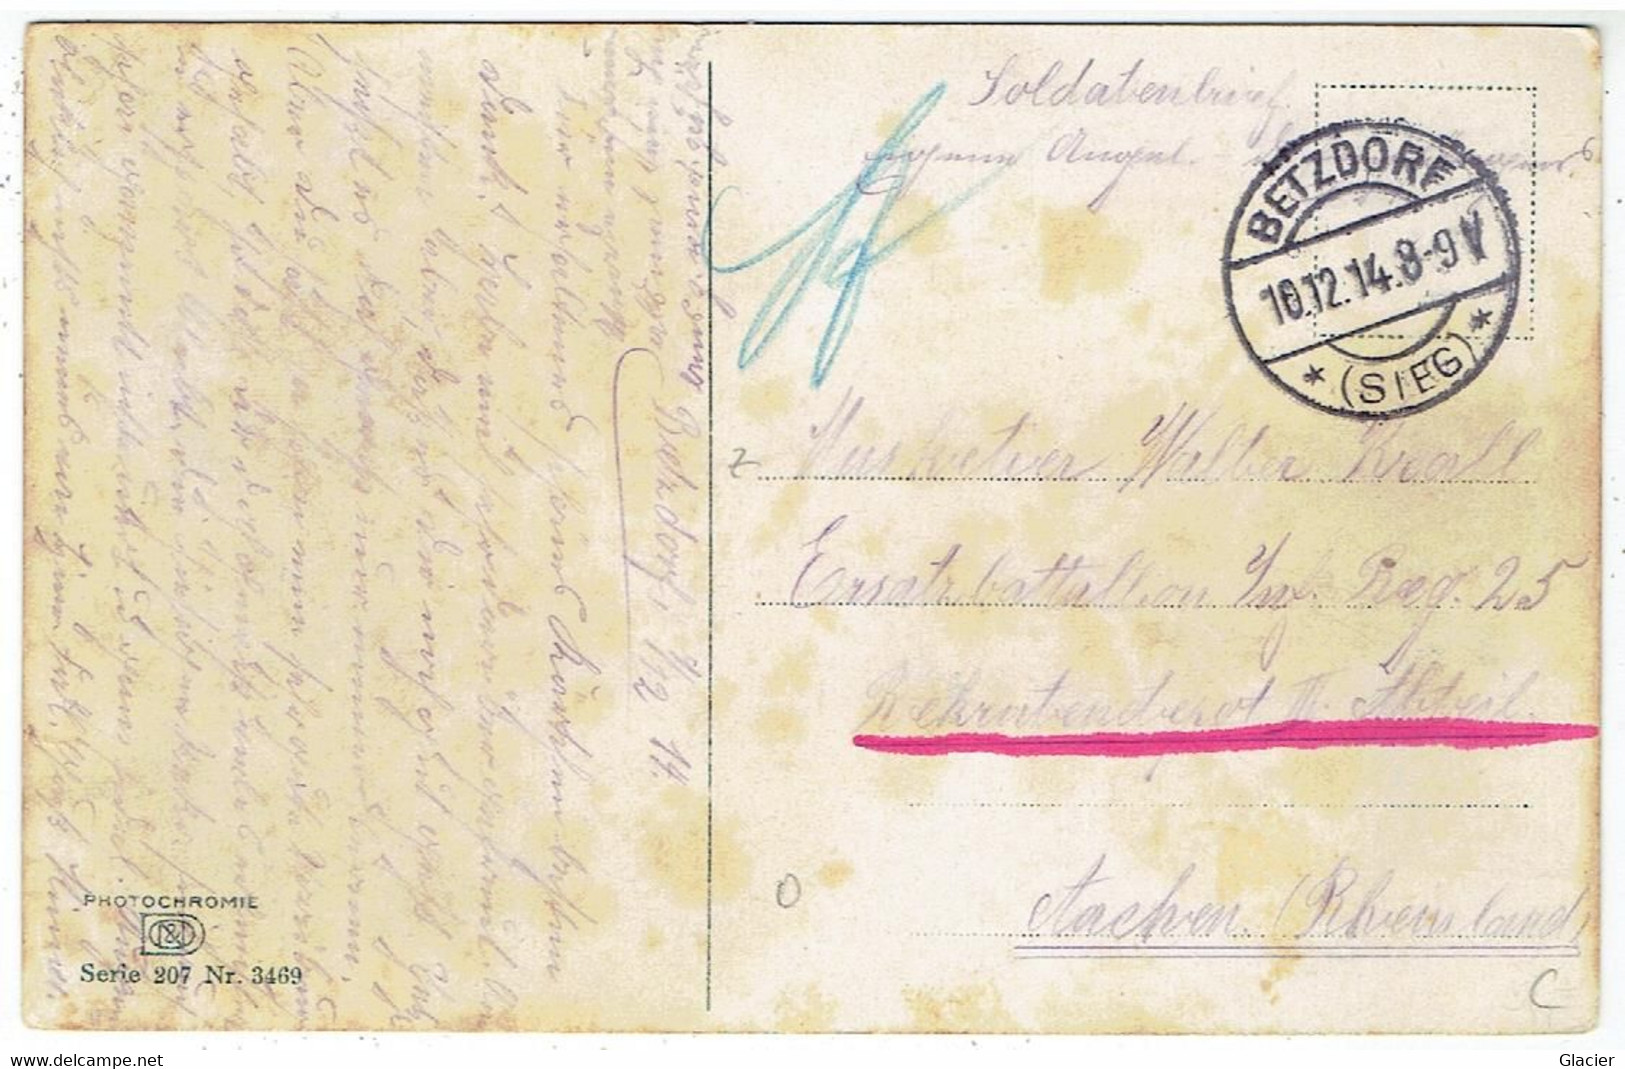 BETZDORF ( Sieg ) - Soldatenbrief 10-12-1914 - Photochromie Serie 207 No 3469 - Betzdorf